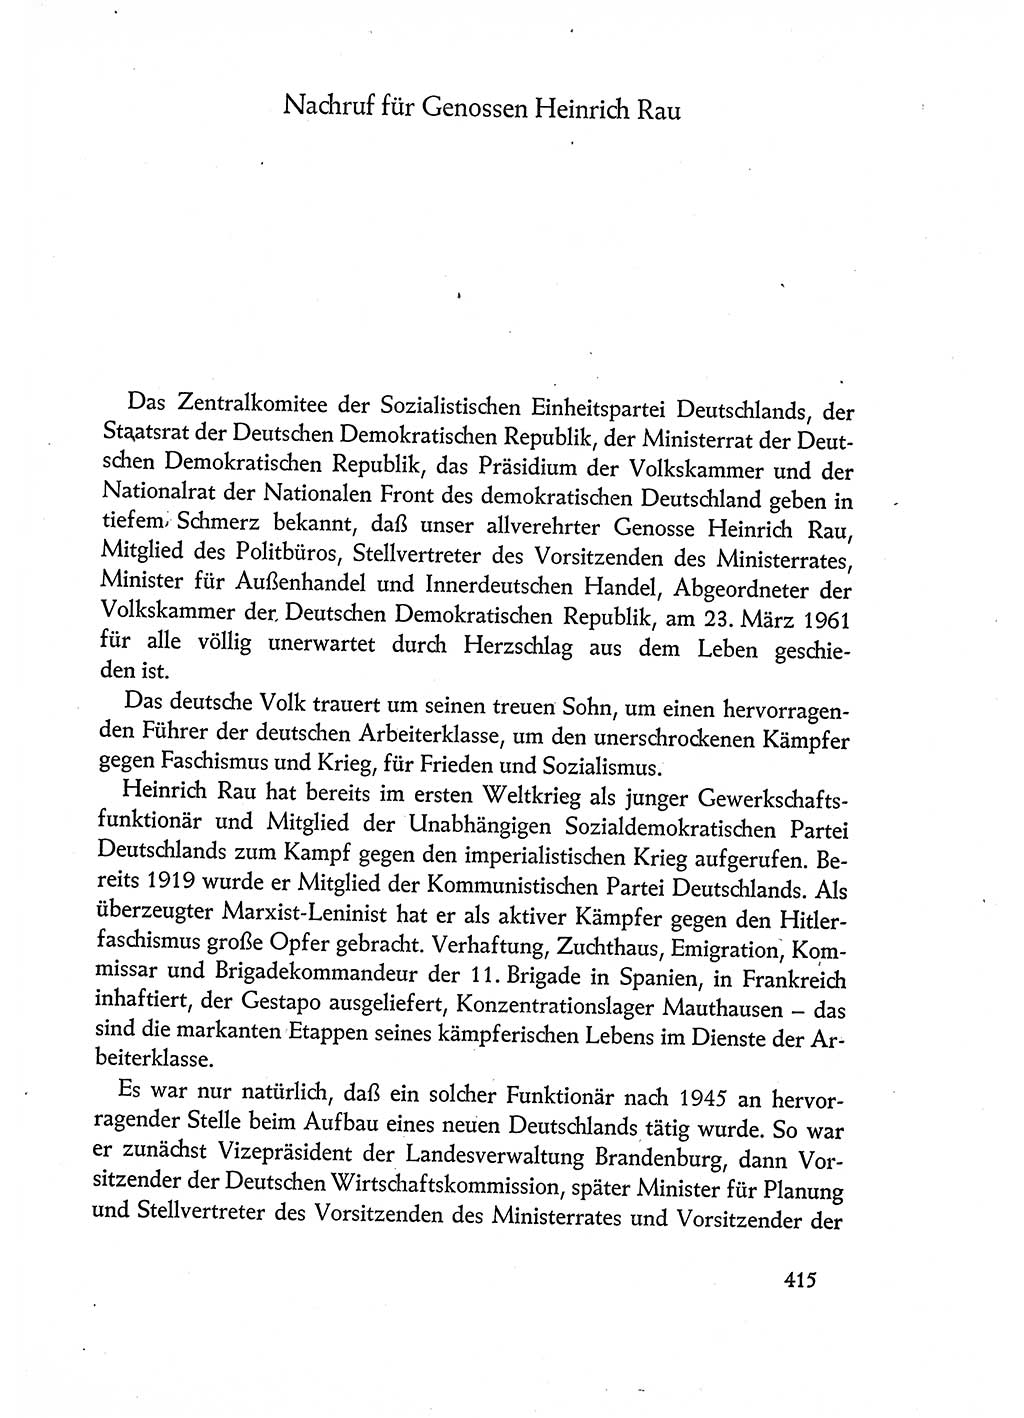 Dokumente der Sozialistischen Einheitspartei Deutschlands (SED) [Deutsche Demokratische Republik (DDR)] 1960-1961, Seite 415 (Dok. SED DDR 1960-1961, S. 415)